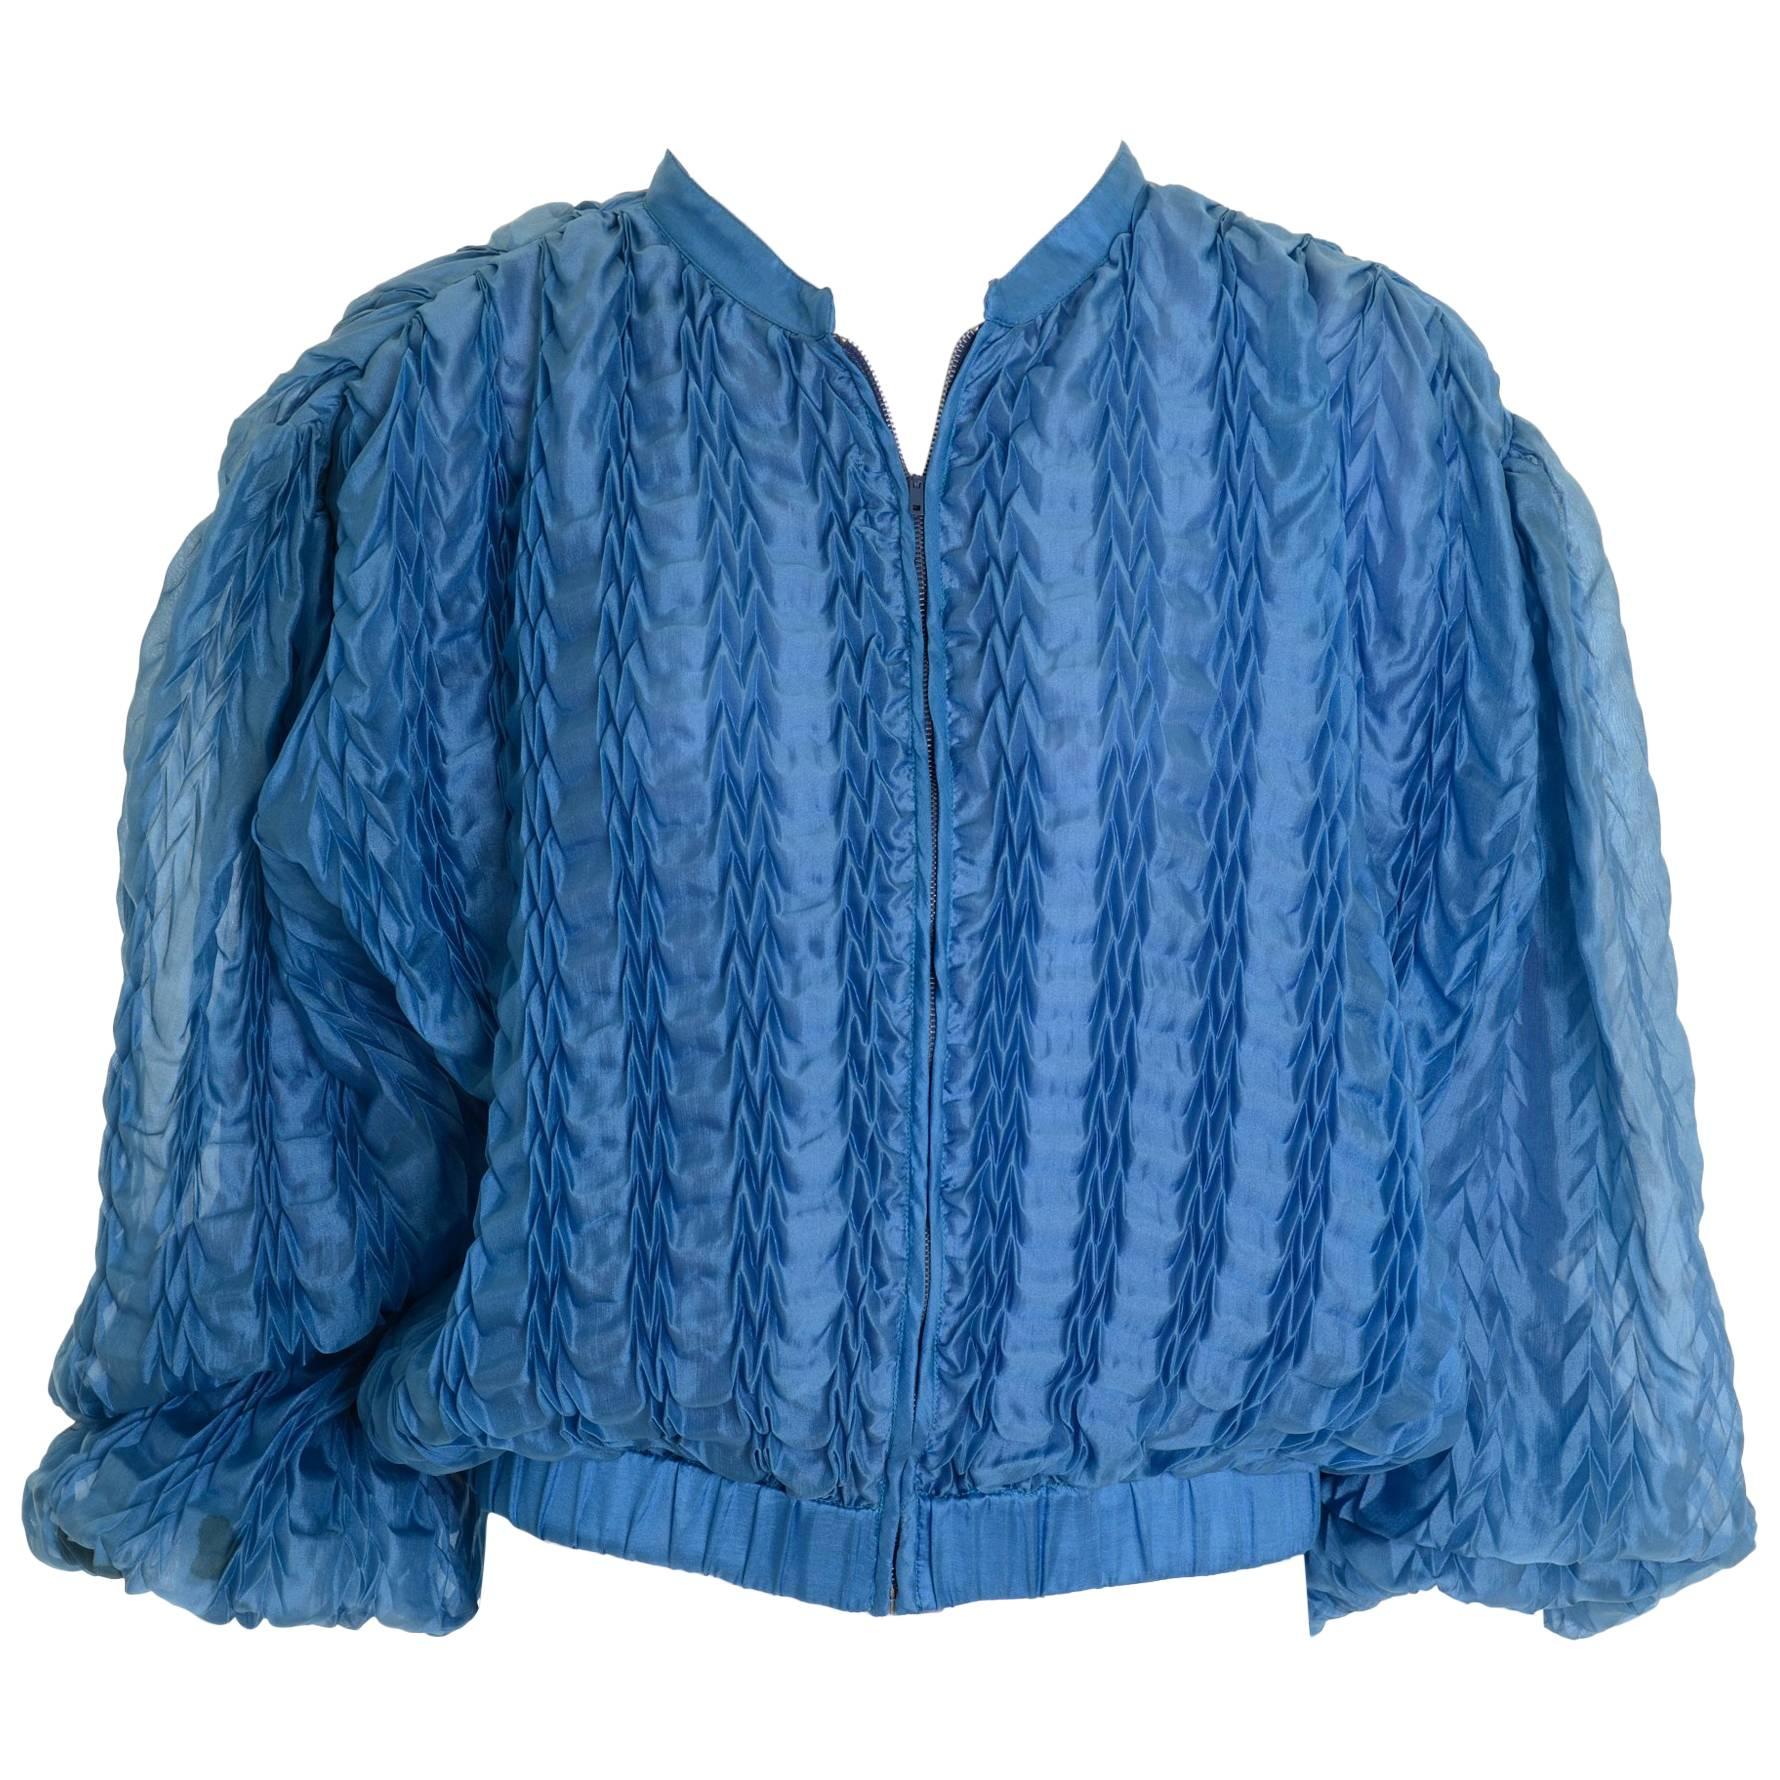 1980s KRIZIA Turquoise Silk Pleateds Bomber Jacket